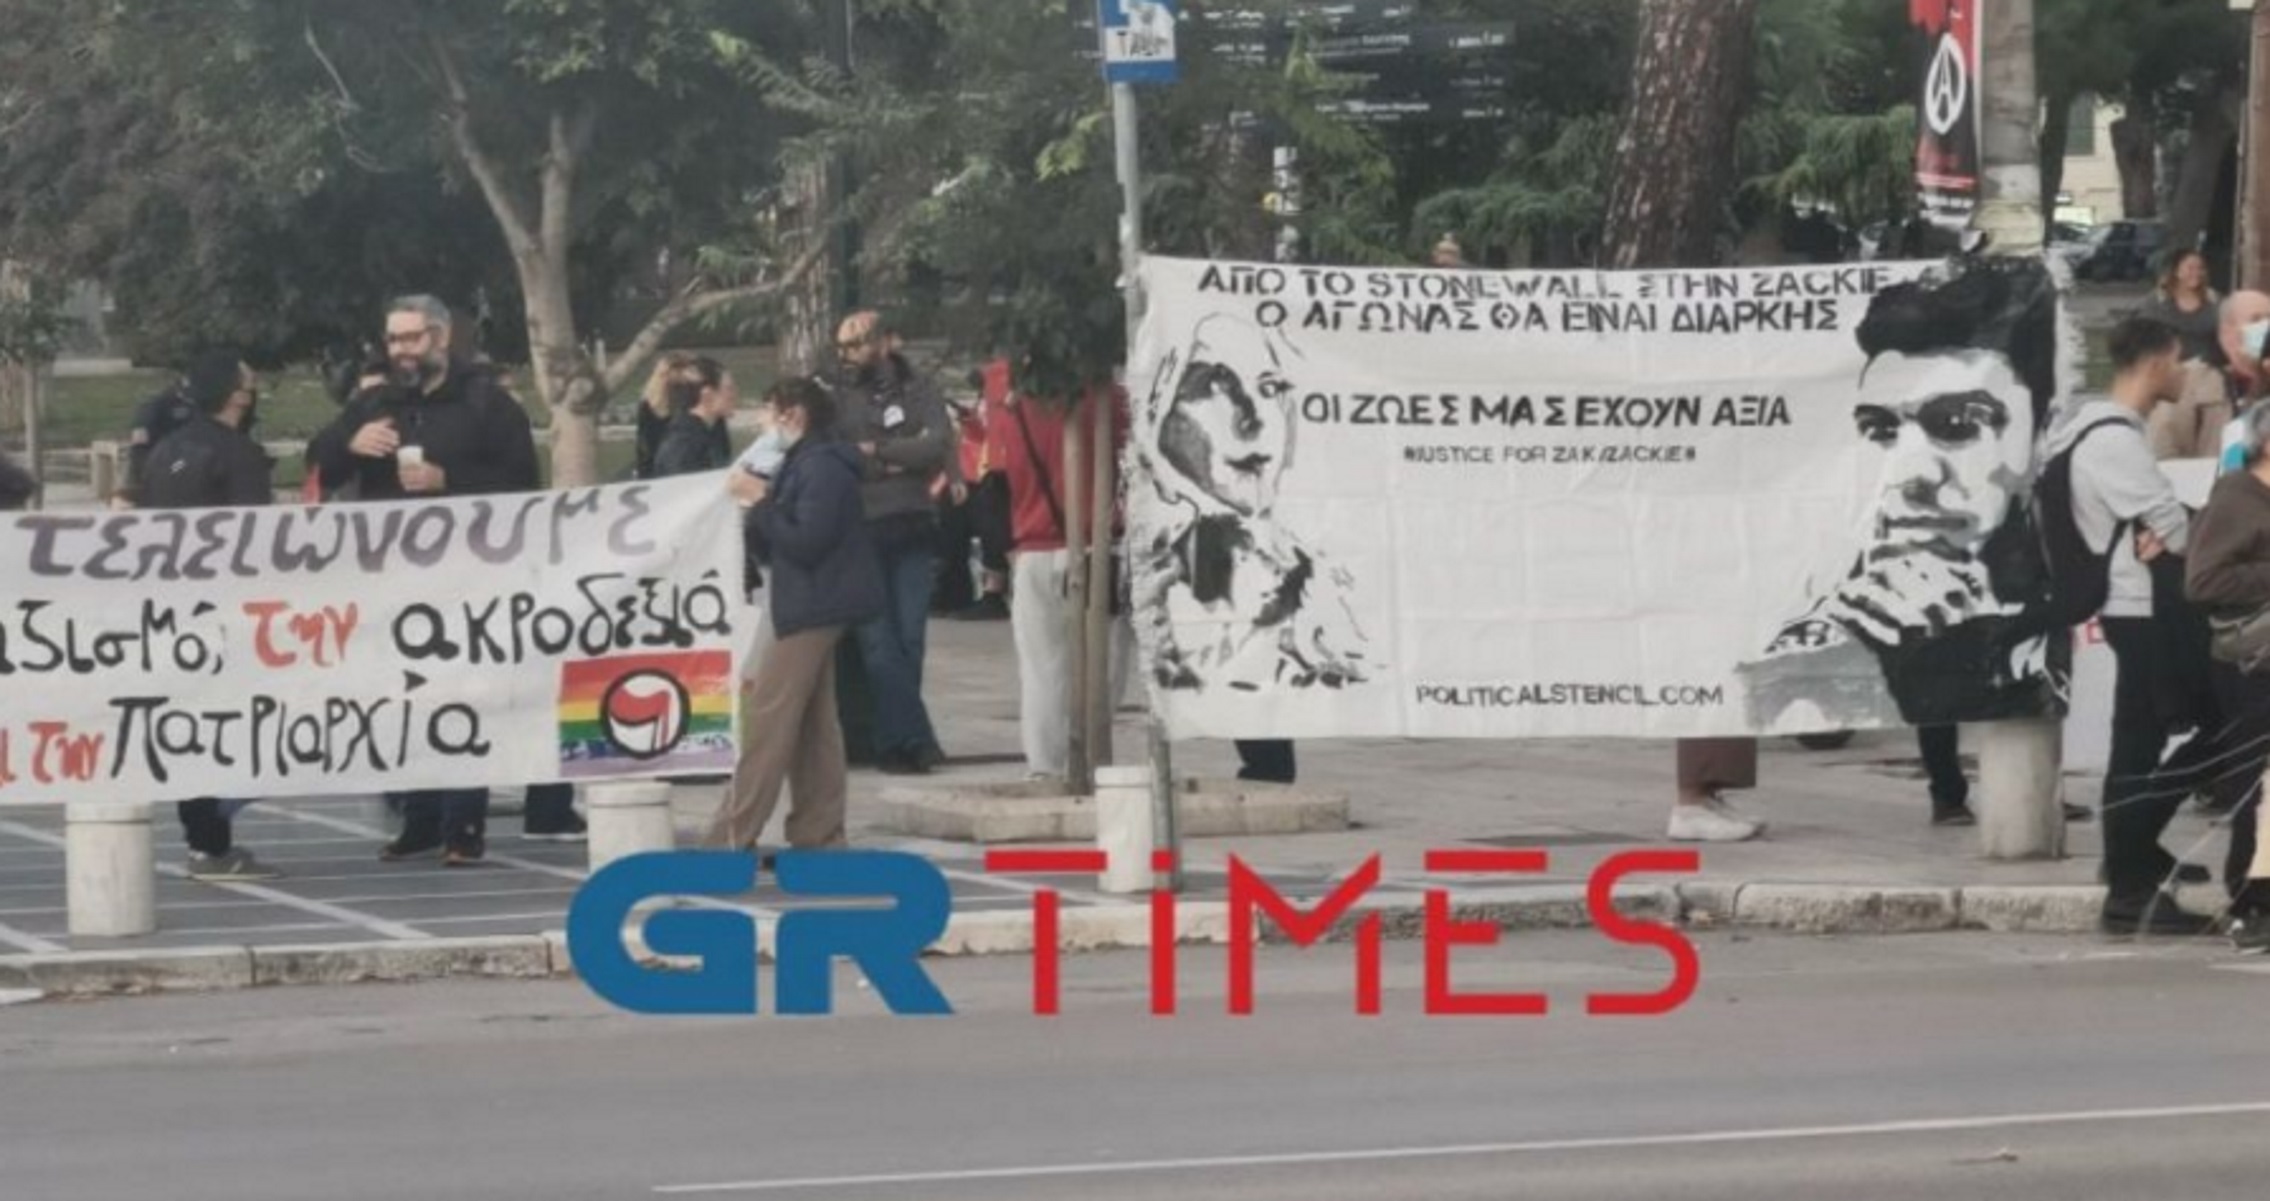 Ζακ Κωστόπουλος – Θεσσαλονίκη: Πορεία οργανώσεων και συλλογικοτήτων λίγες ώρες πριν την επανέναρξη της δίκης